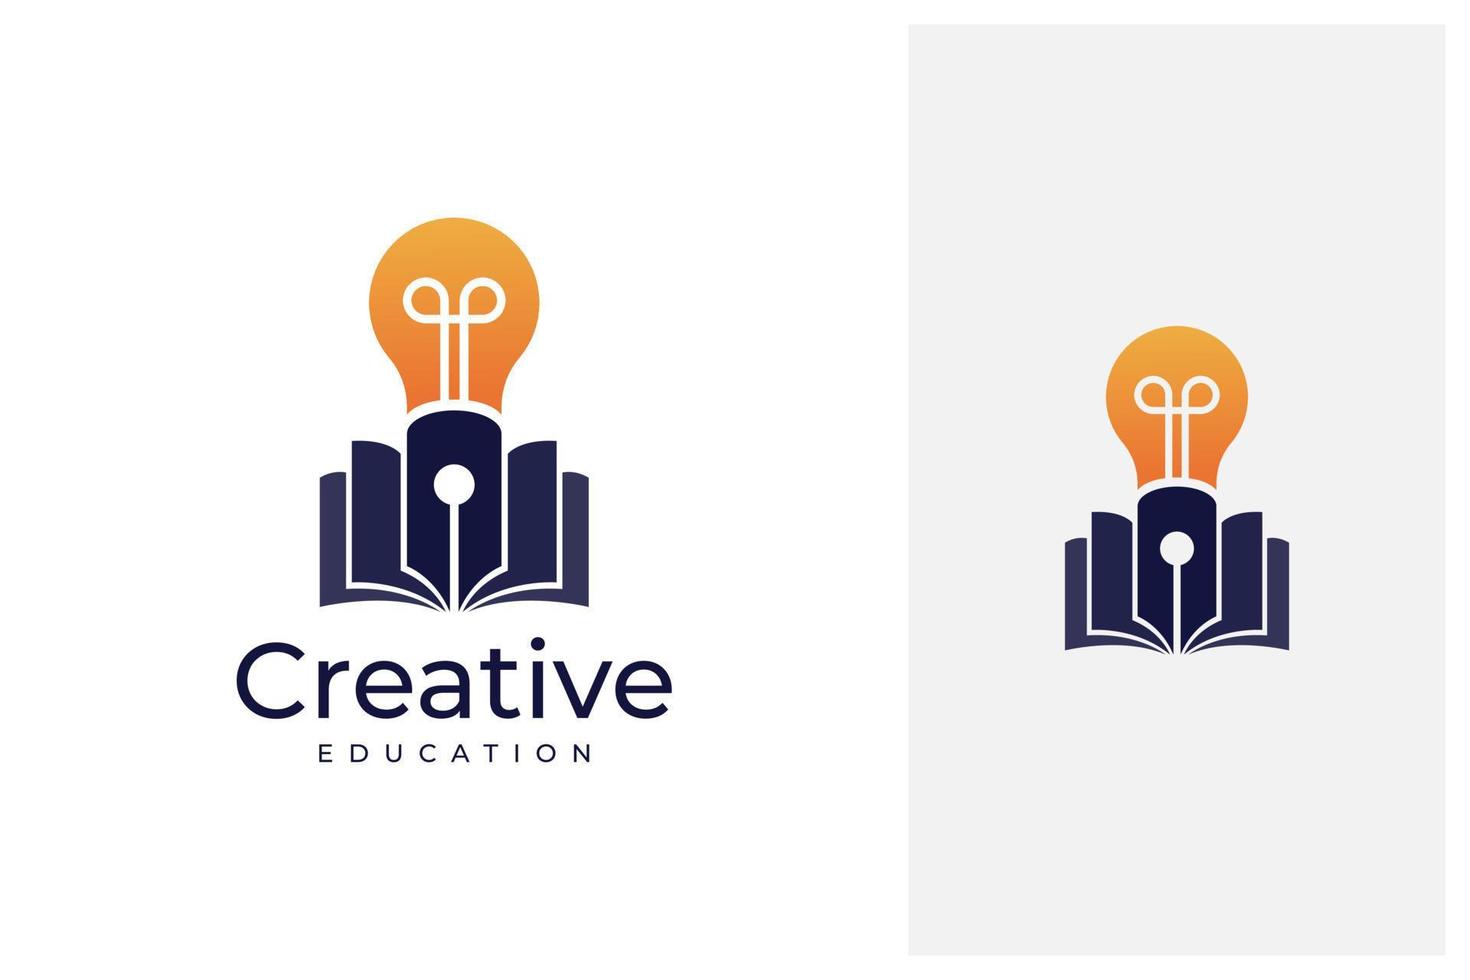 pen, bulb and book creative education logo design vector